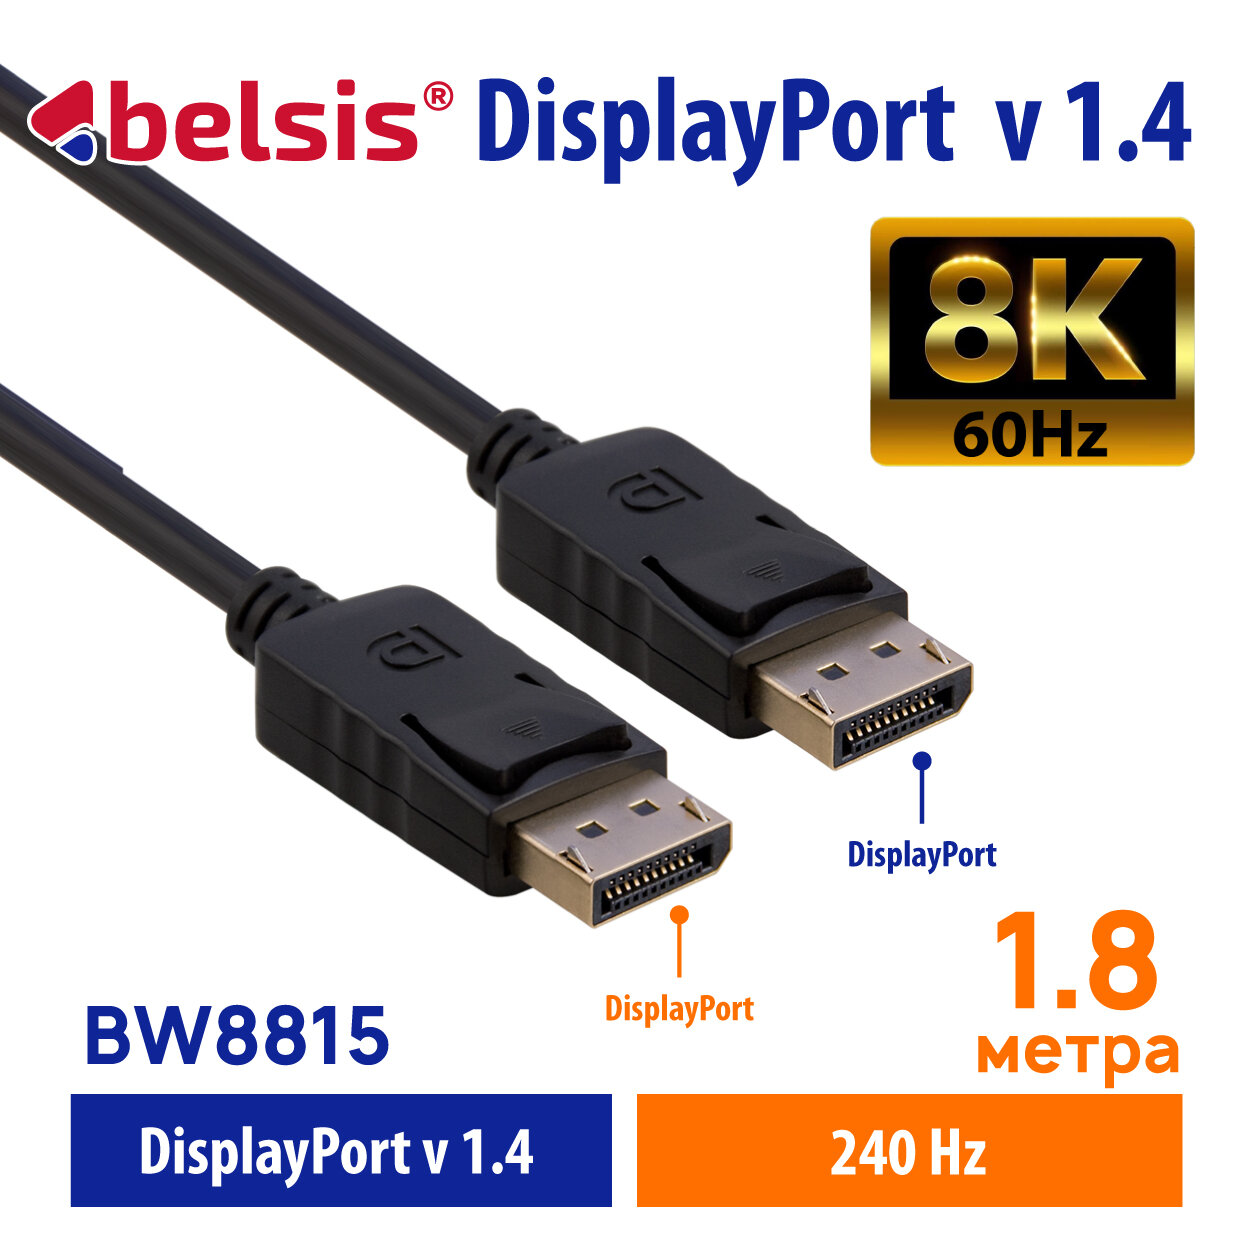 Кабель DisplayPort 1.4 8K 60Hz 4K 165Hz Belsis дисплей порт 1.4